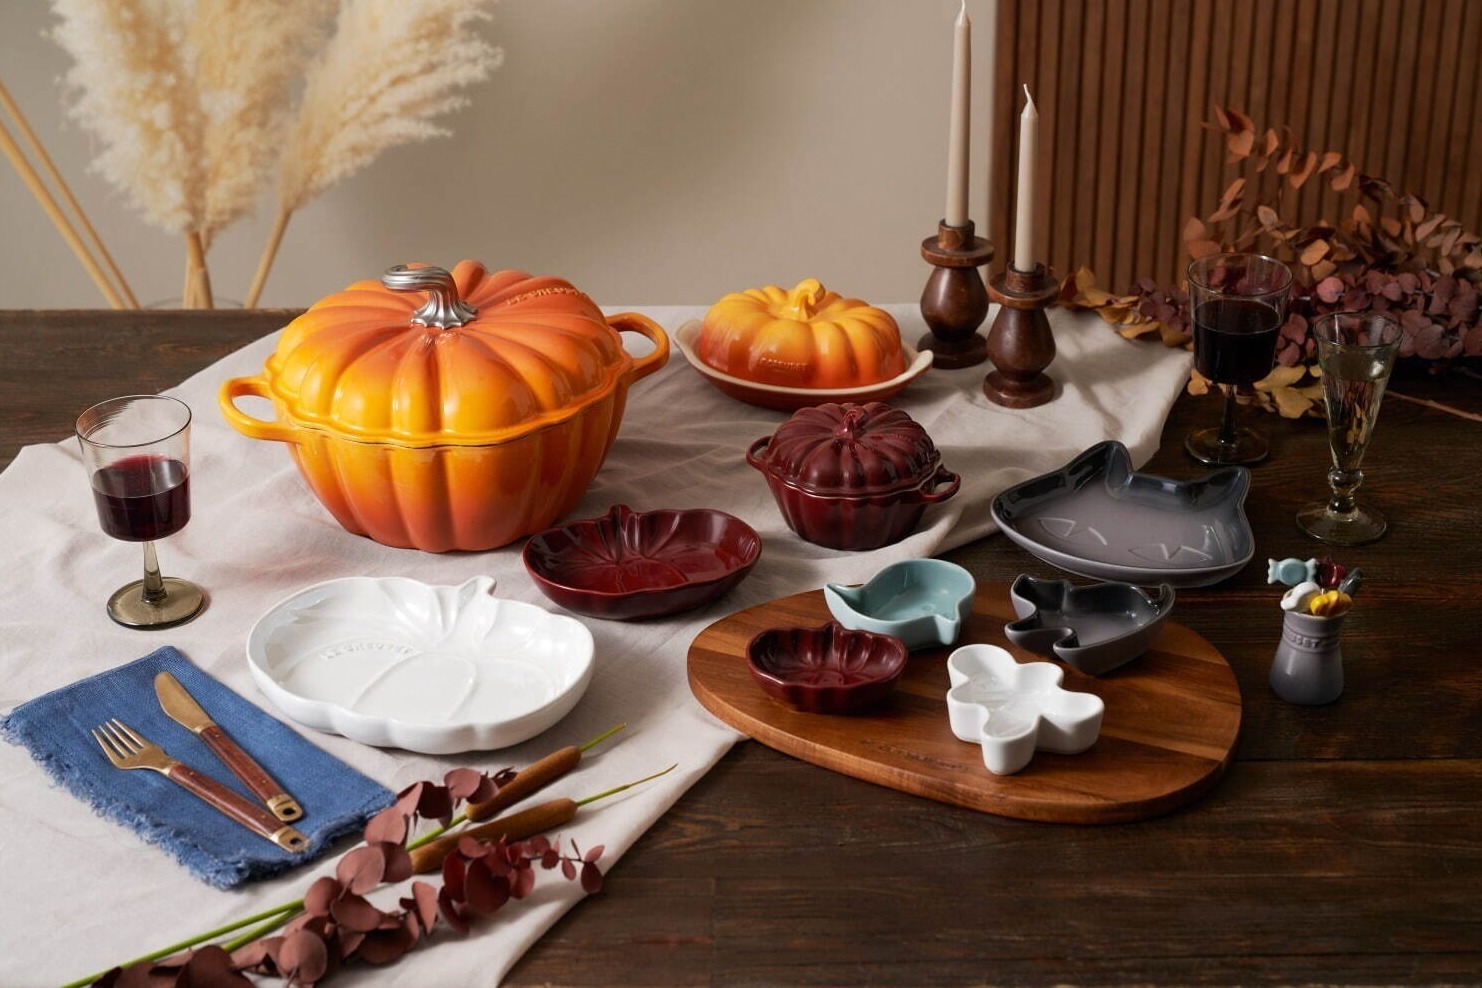 ル・クルーゼのハロウィン限定テーブルウェア、パンプキンモチーフの鍋